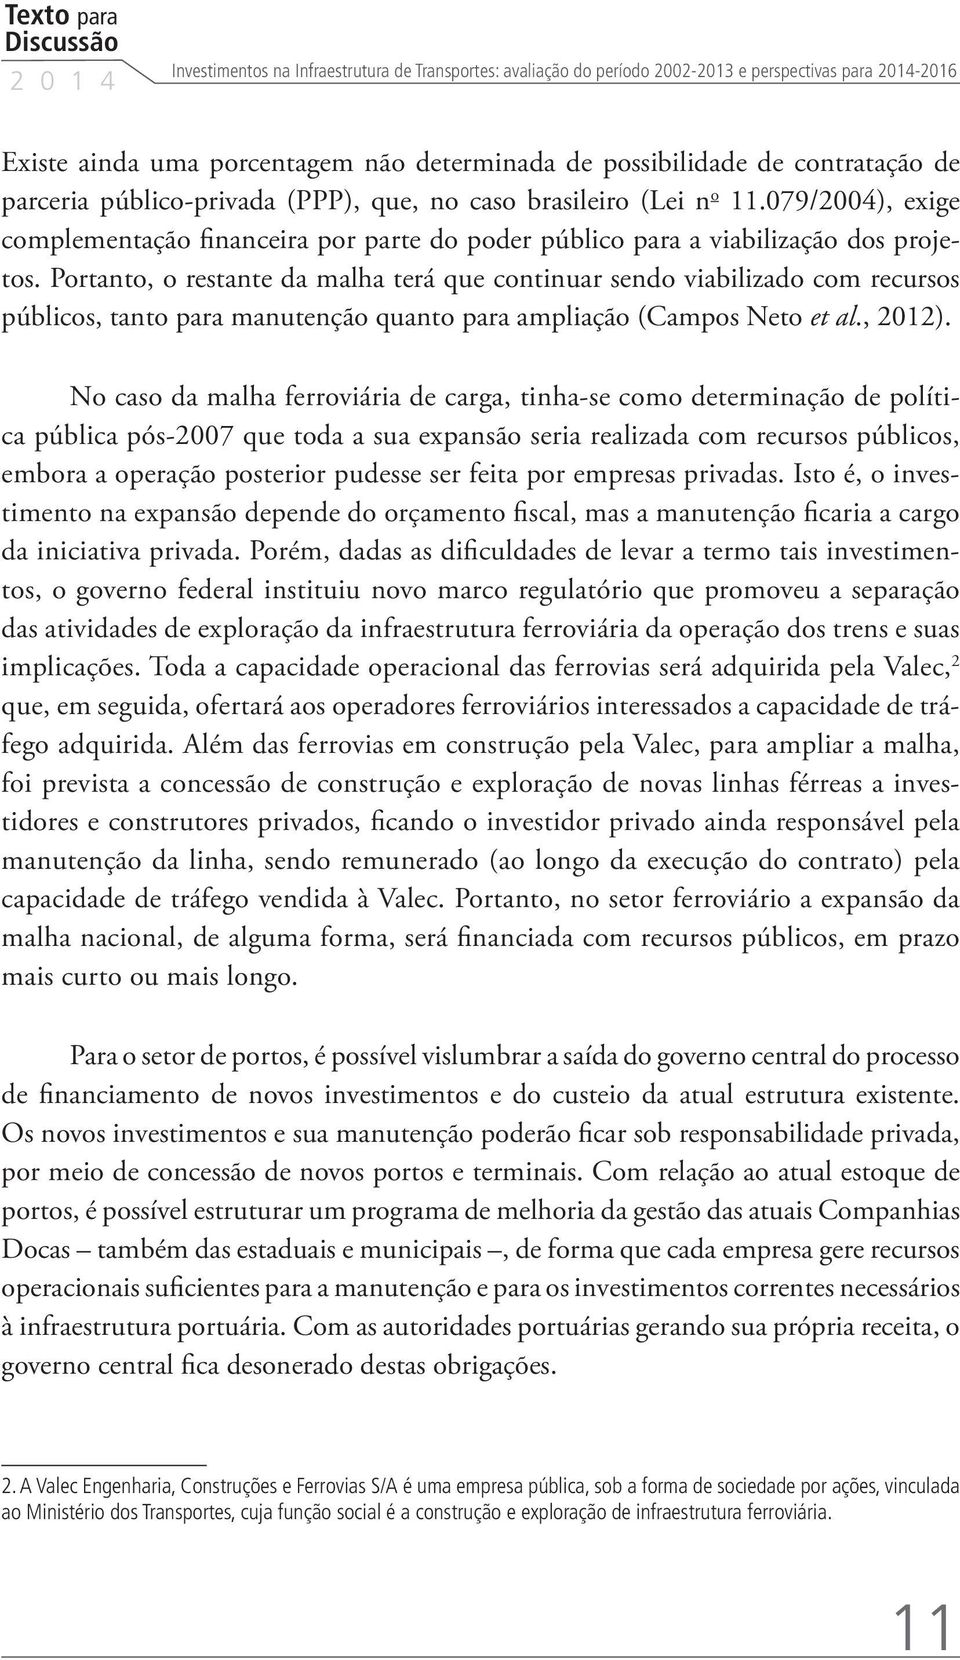 Portanto, o restante da malha terá que continuar sendo viabilizado com recursos públicos, tanto para manutenção quanto para ampliação (Campos Neto et al., 2012).